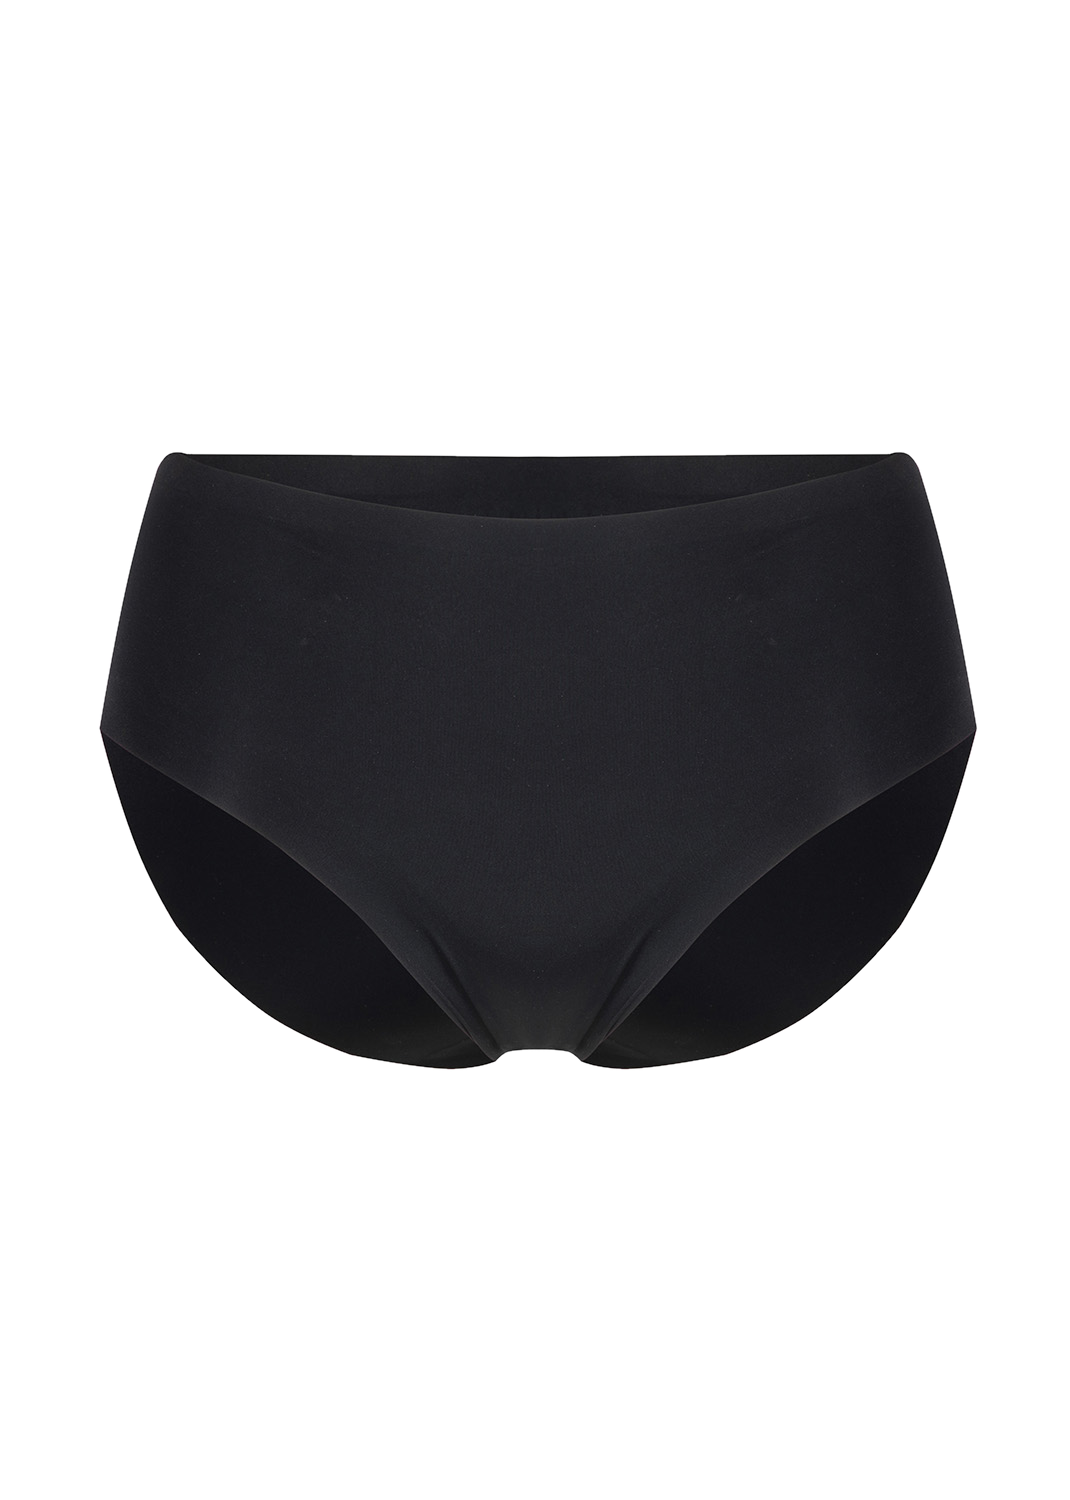 Gaia underwear